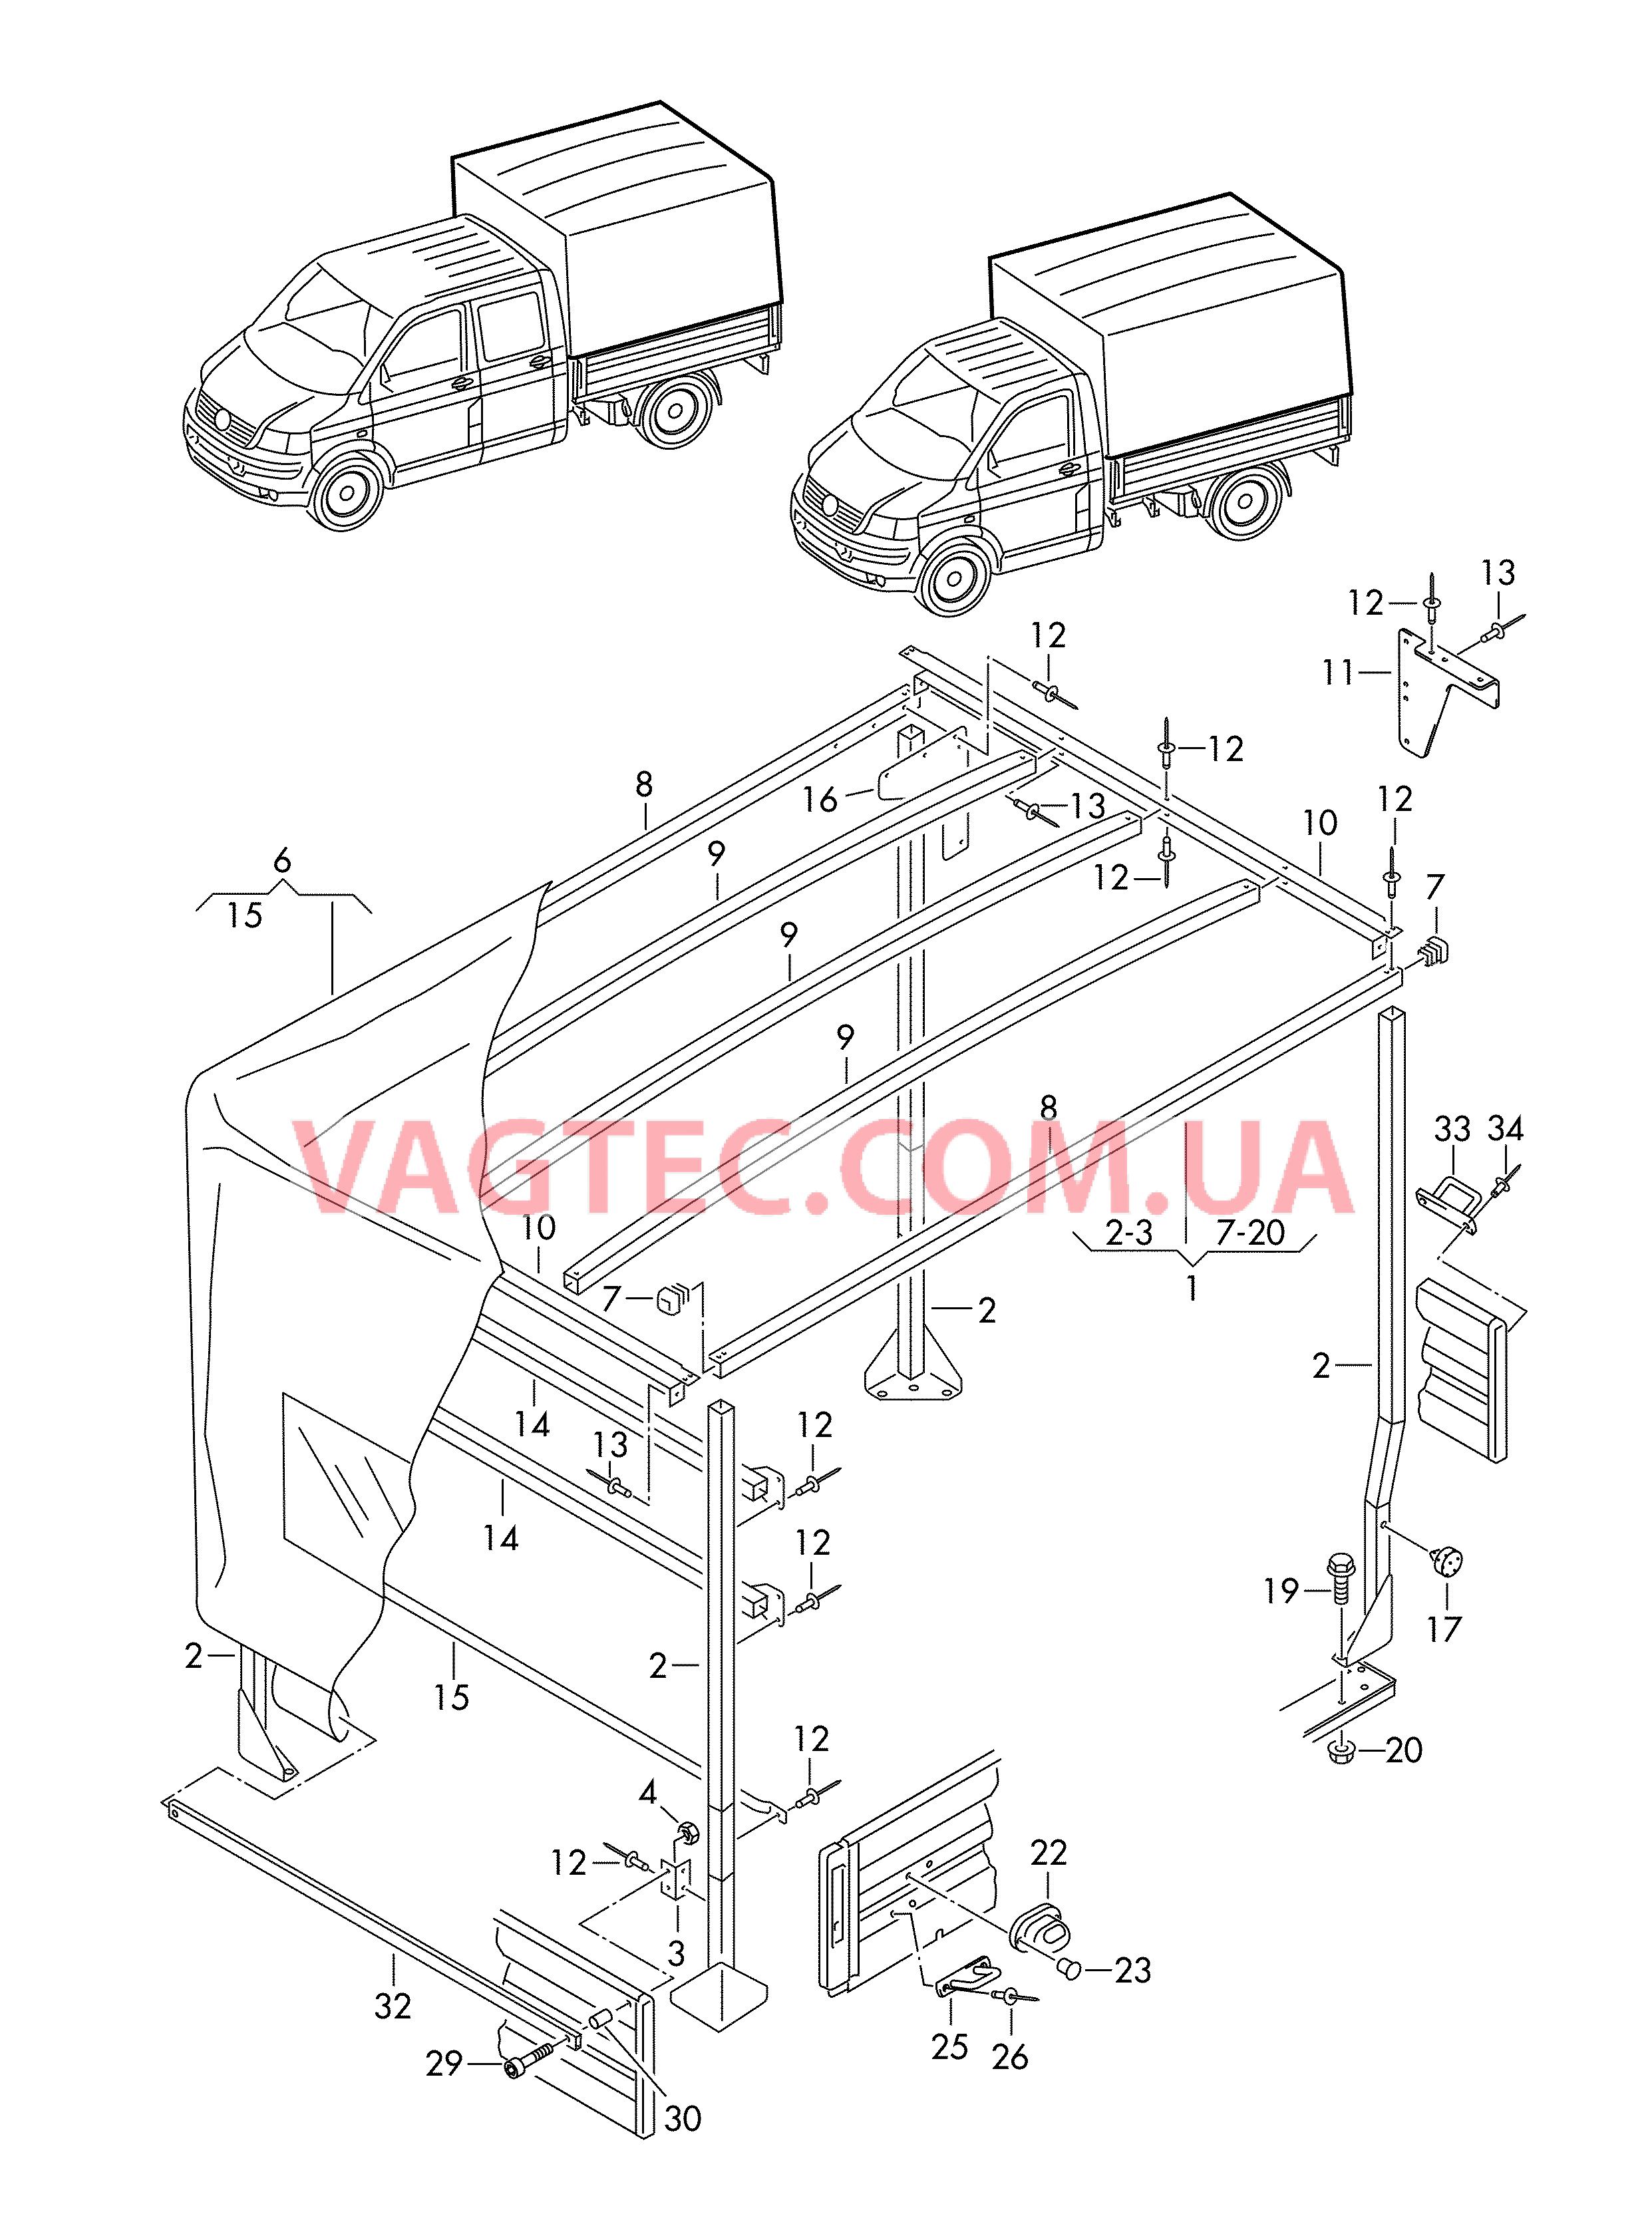 Каркас складной крыши с тентом и деталями крепления  для VOLKSWAGEN Transporter 2005-1